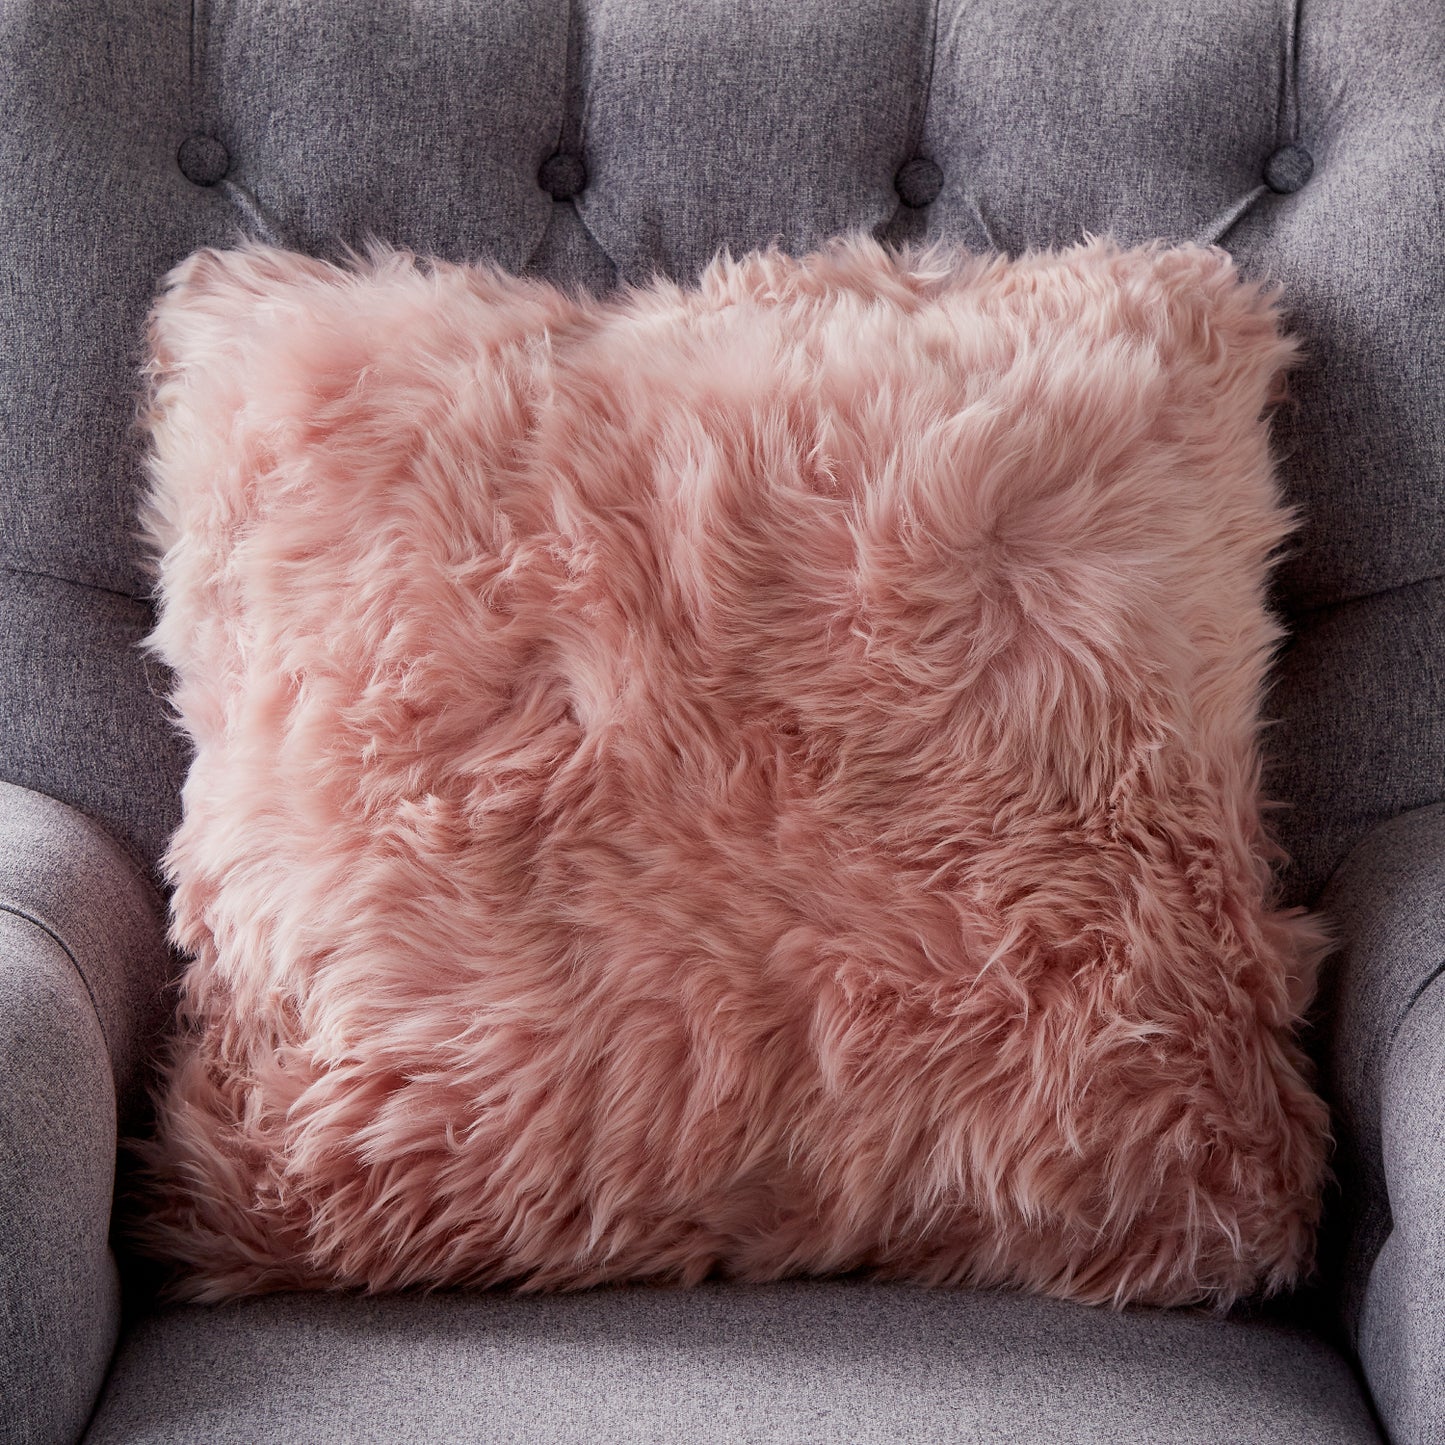 Sheepskin cushion blush pink by Native